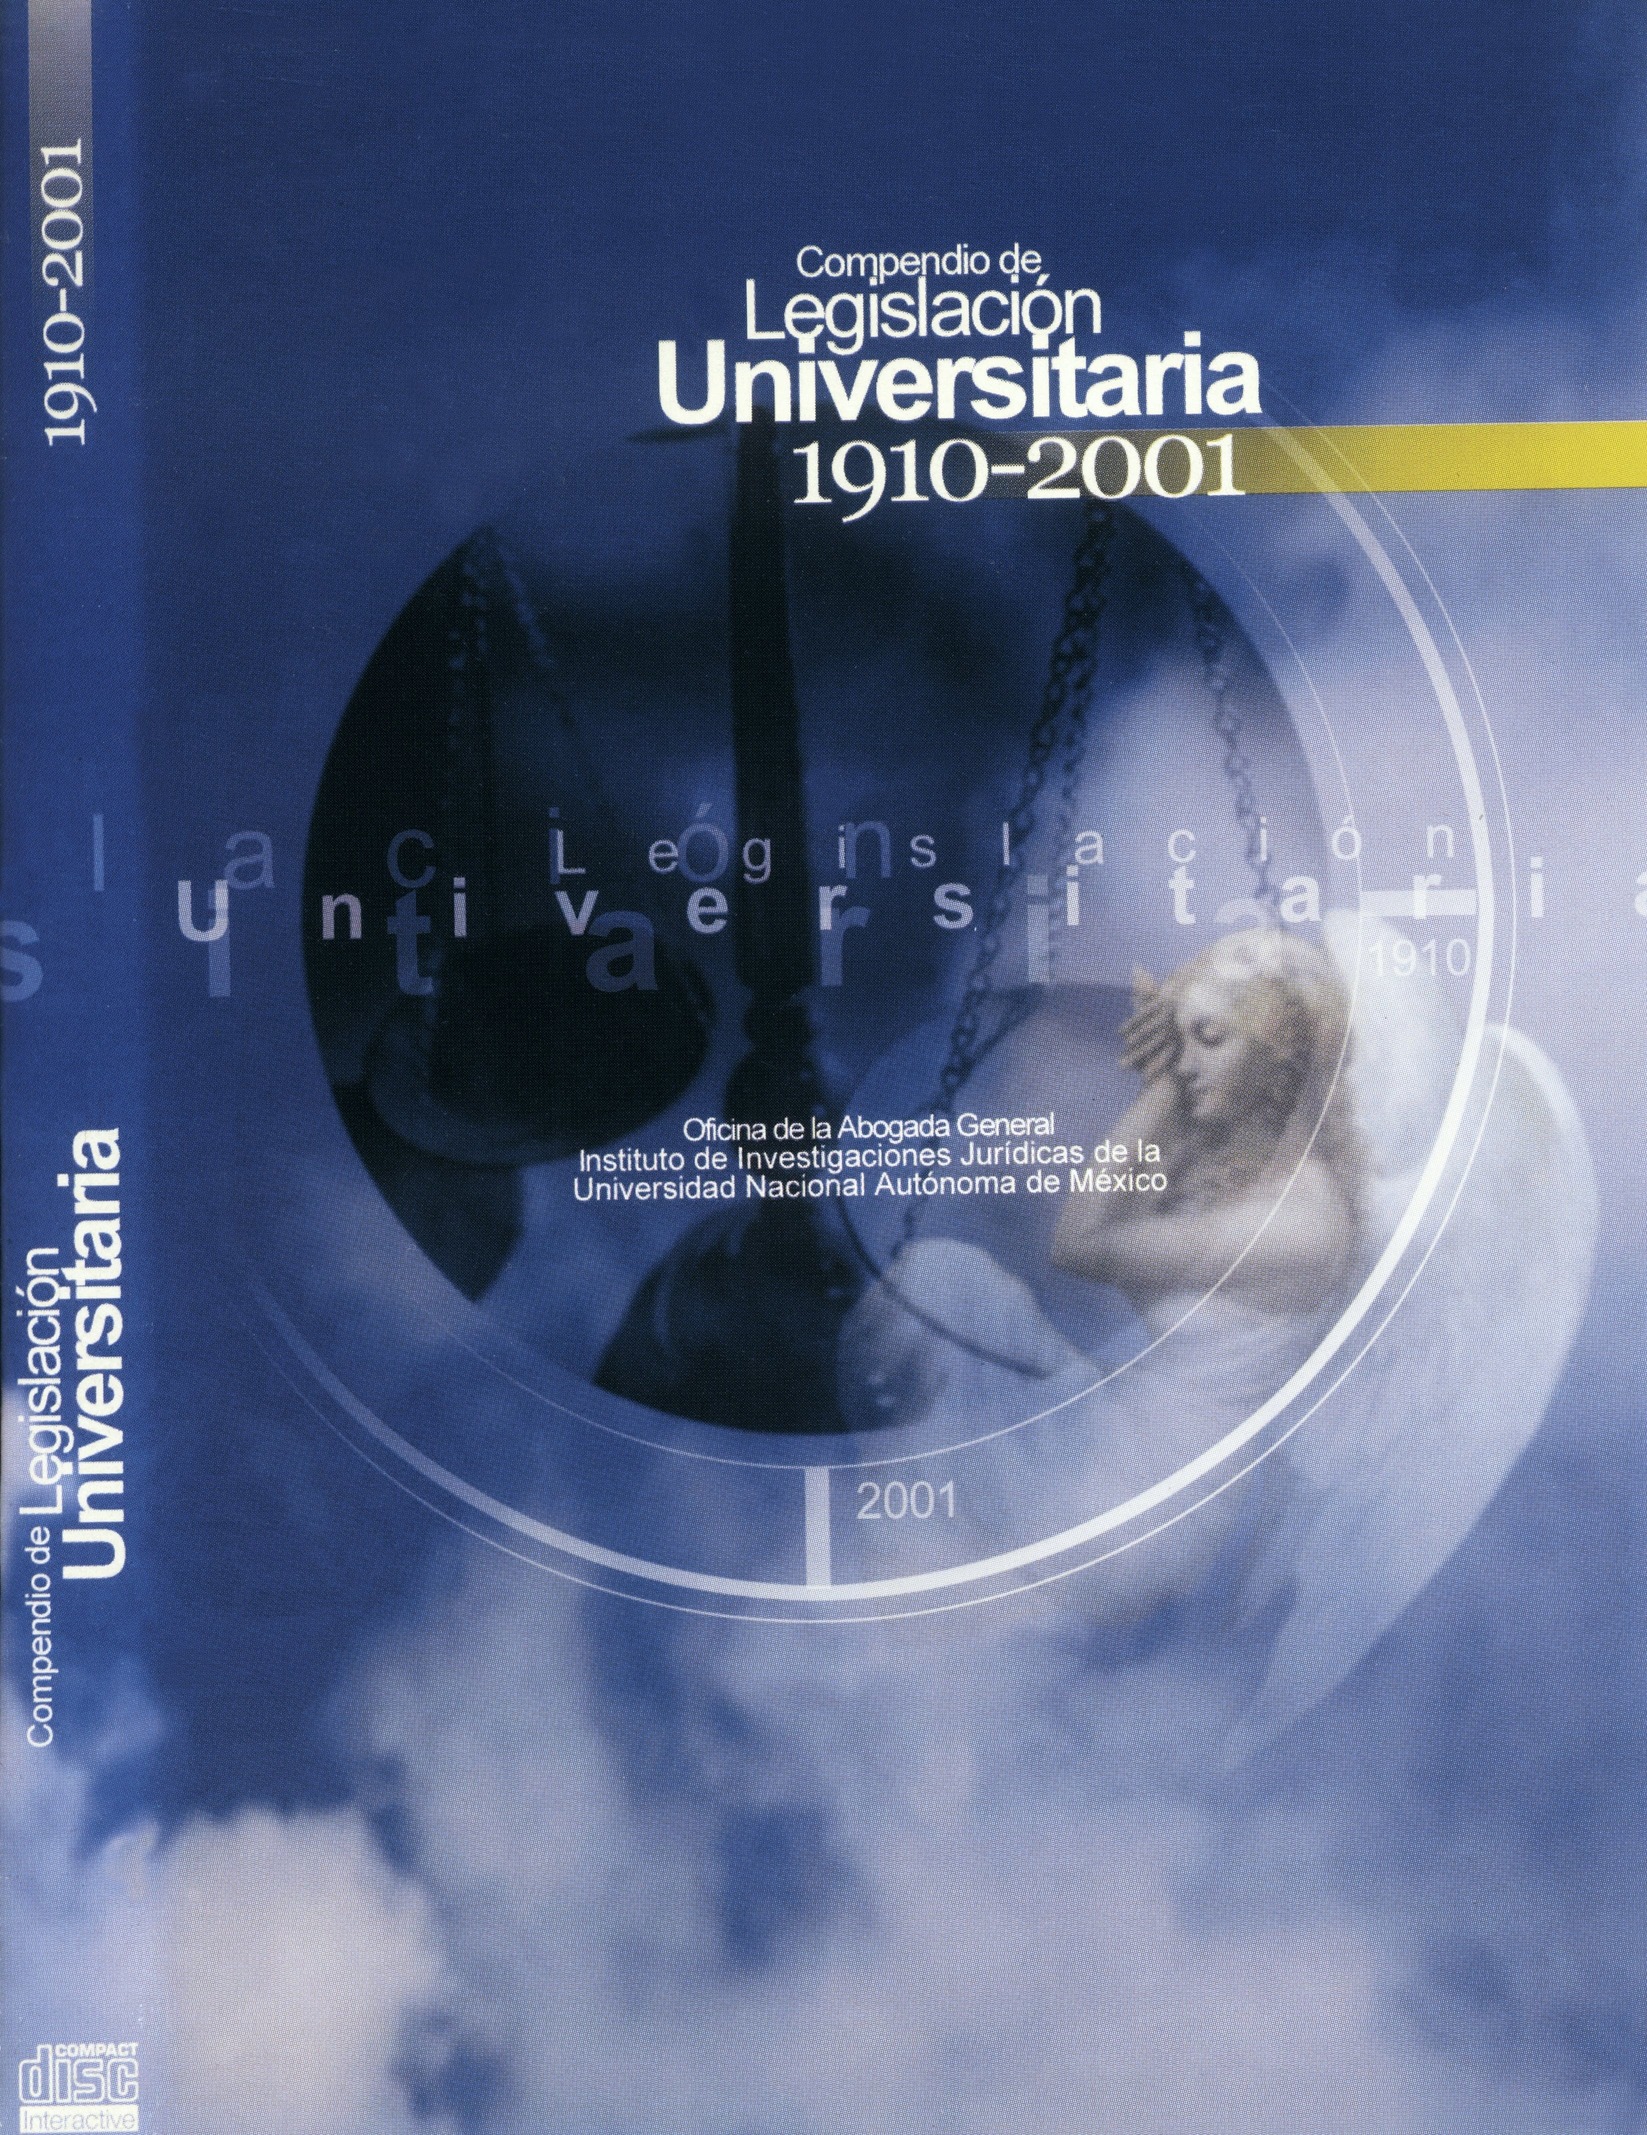 Compendio de Legislación Universitaria 1910-2001, disco compacto.